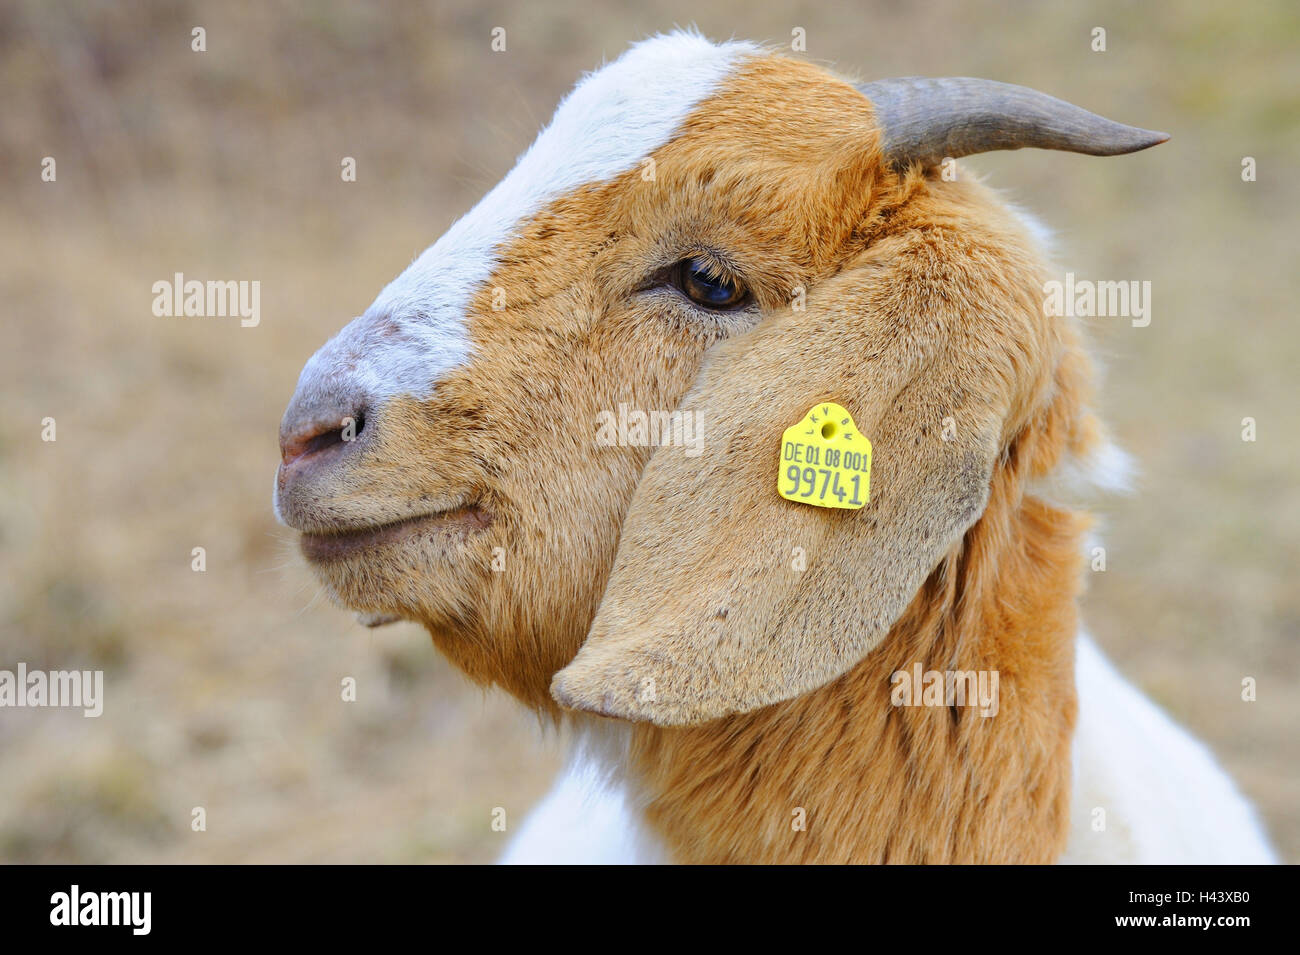 Casa di capra, Capra hircus, marchio auricolare, ritratto, Foto Stock